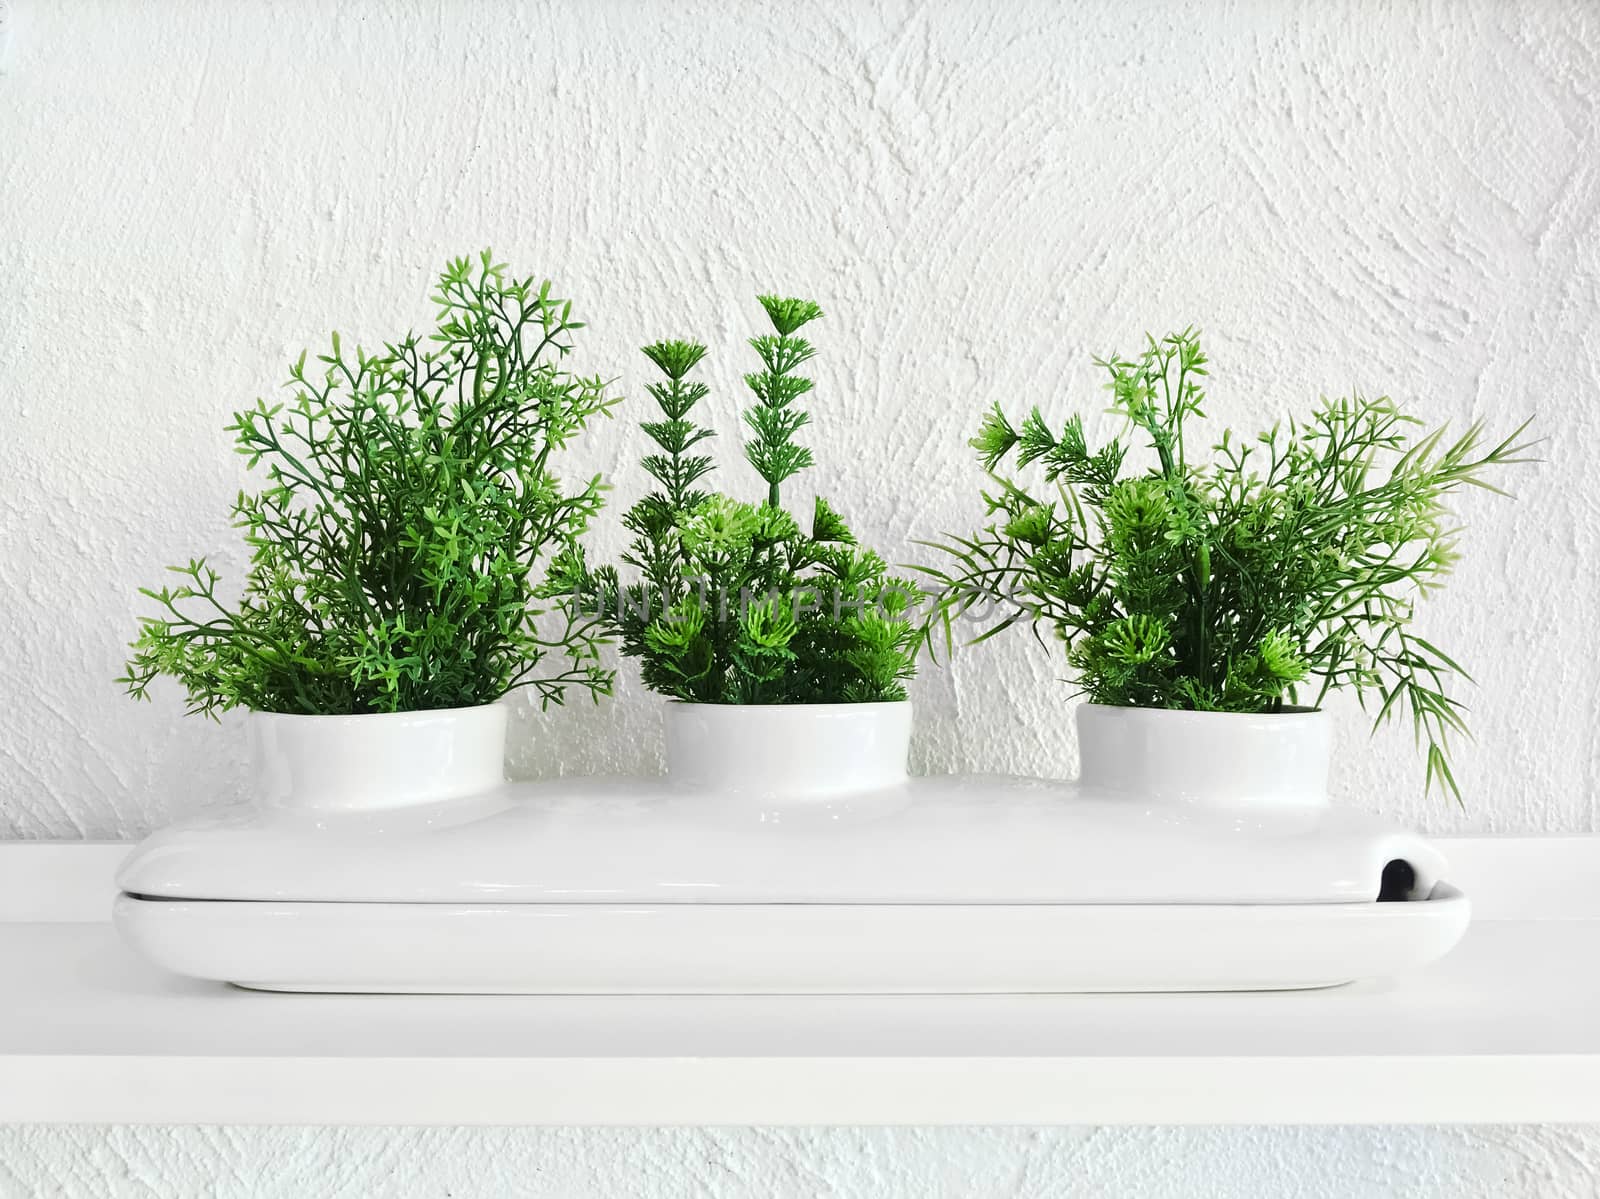 Green plants in a white decorative ceramic pot. Home decor.